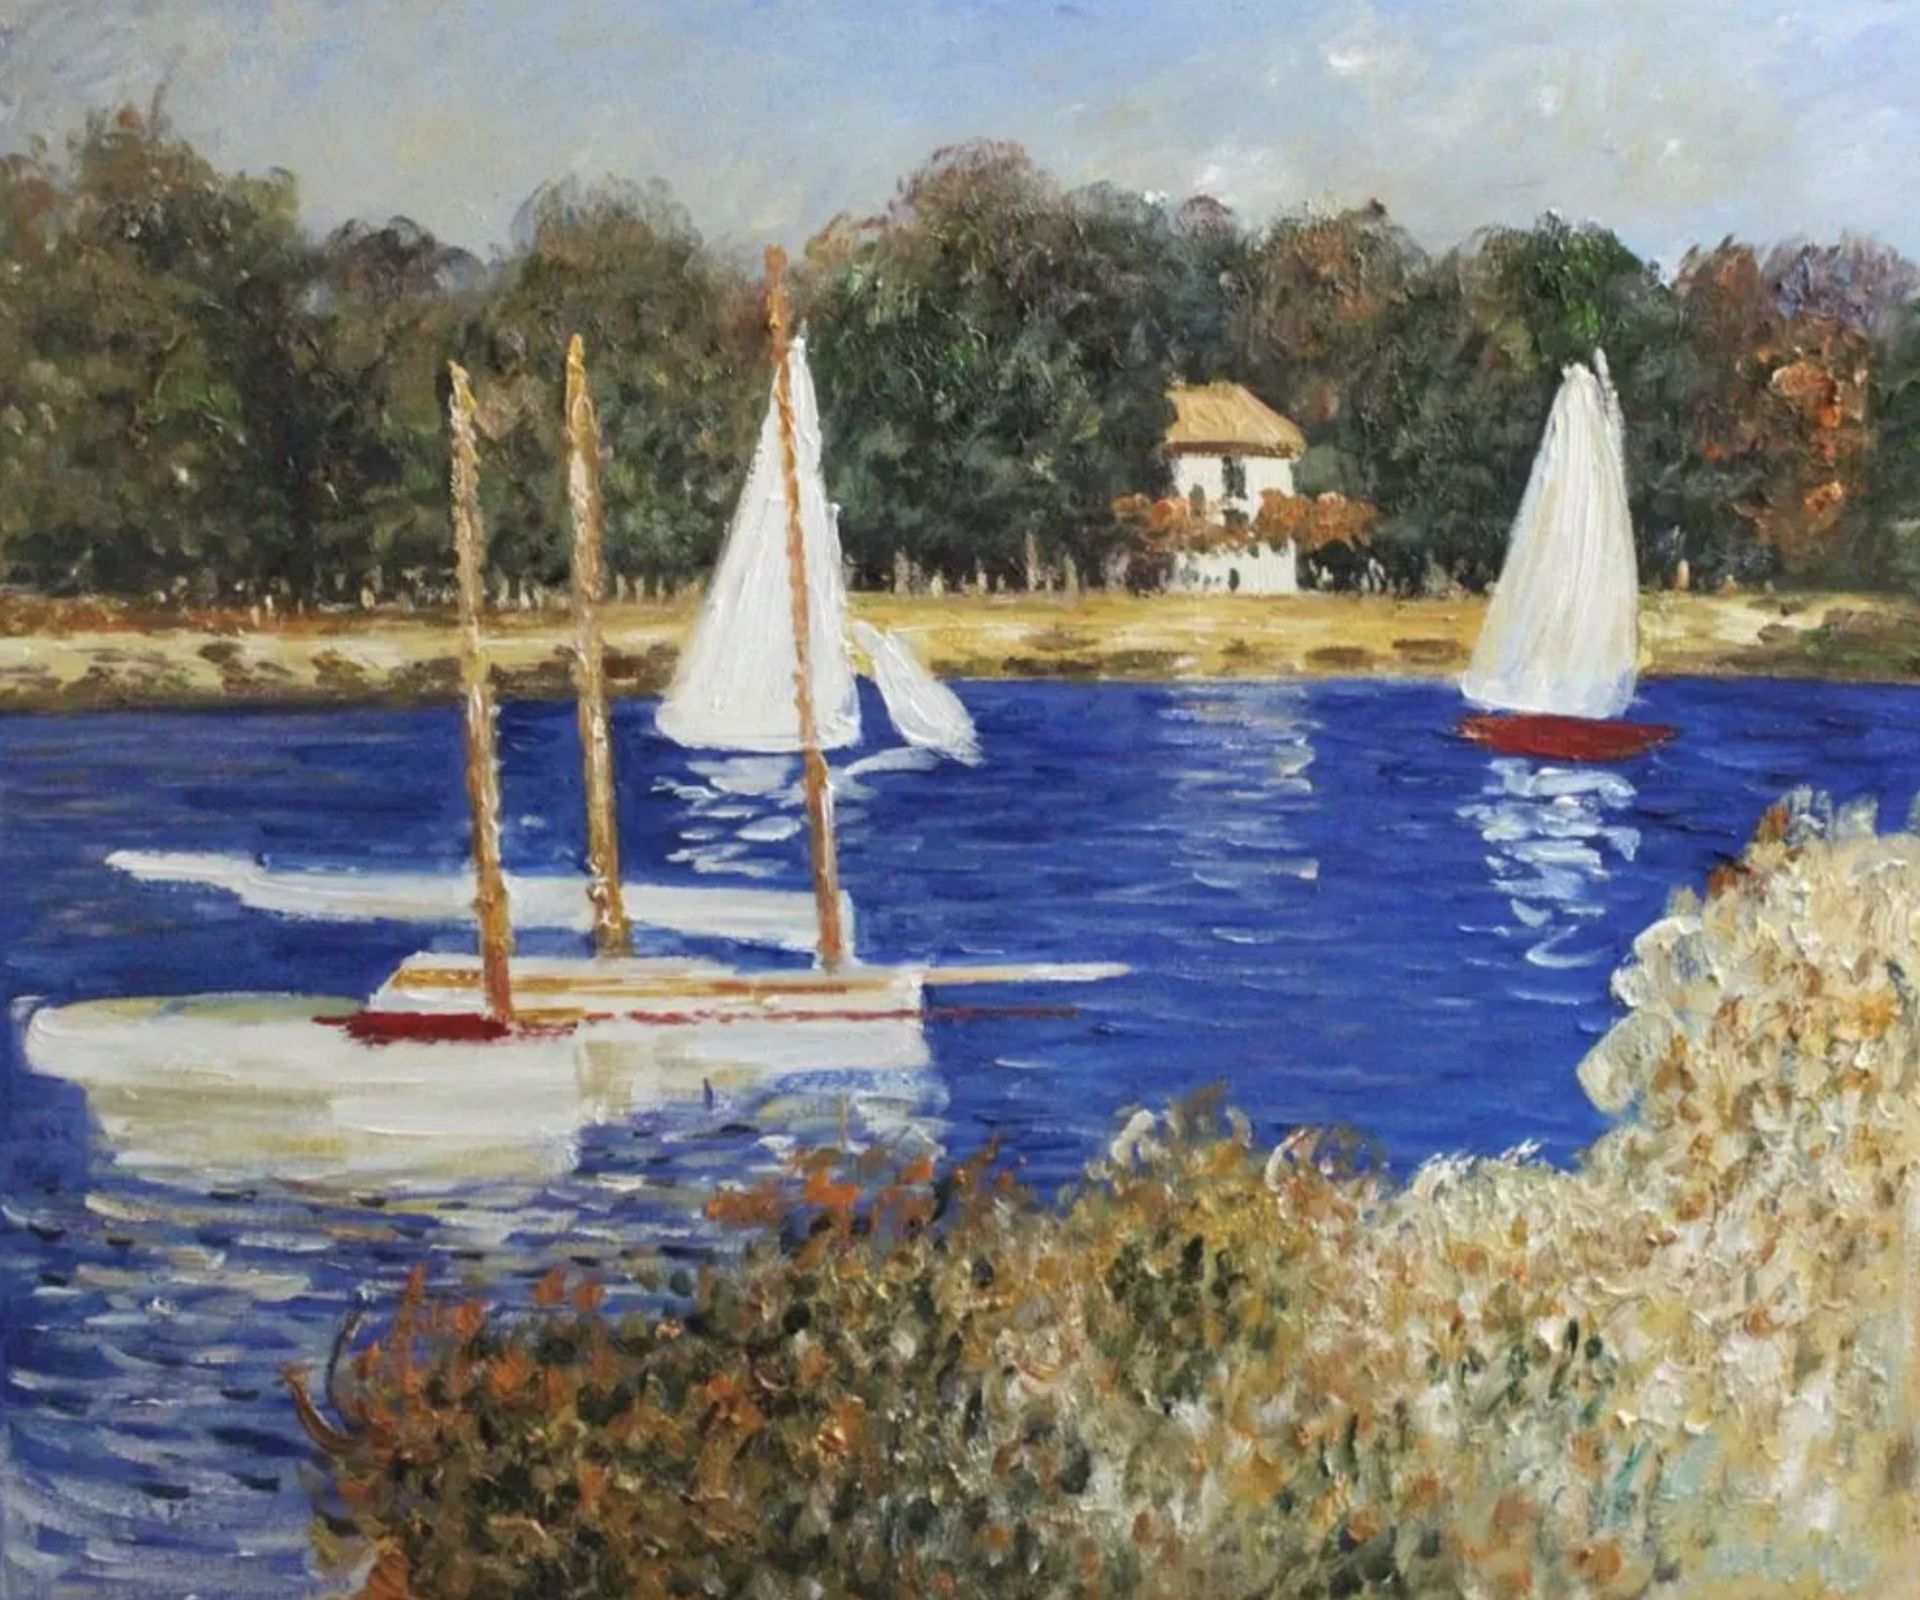 Claude Monet "Bassin d'Argenteuil, 1874" Oil Painting, After